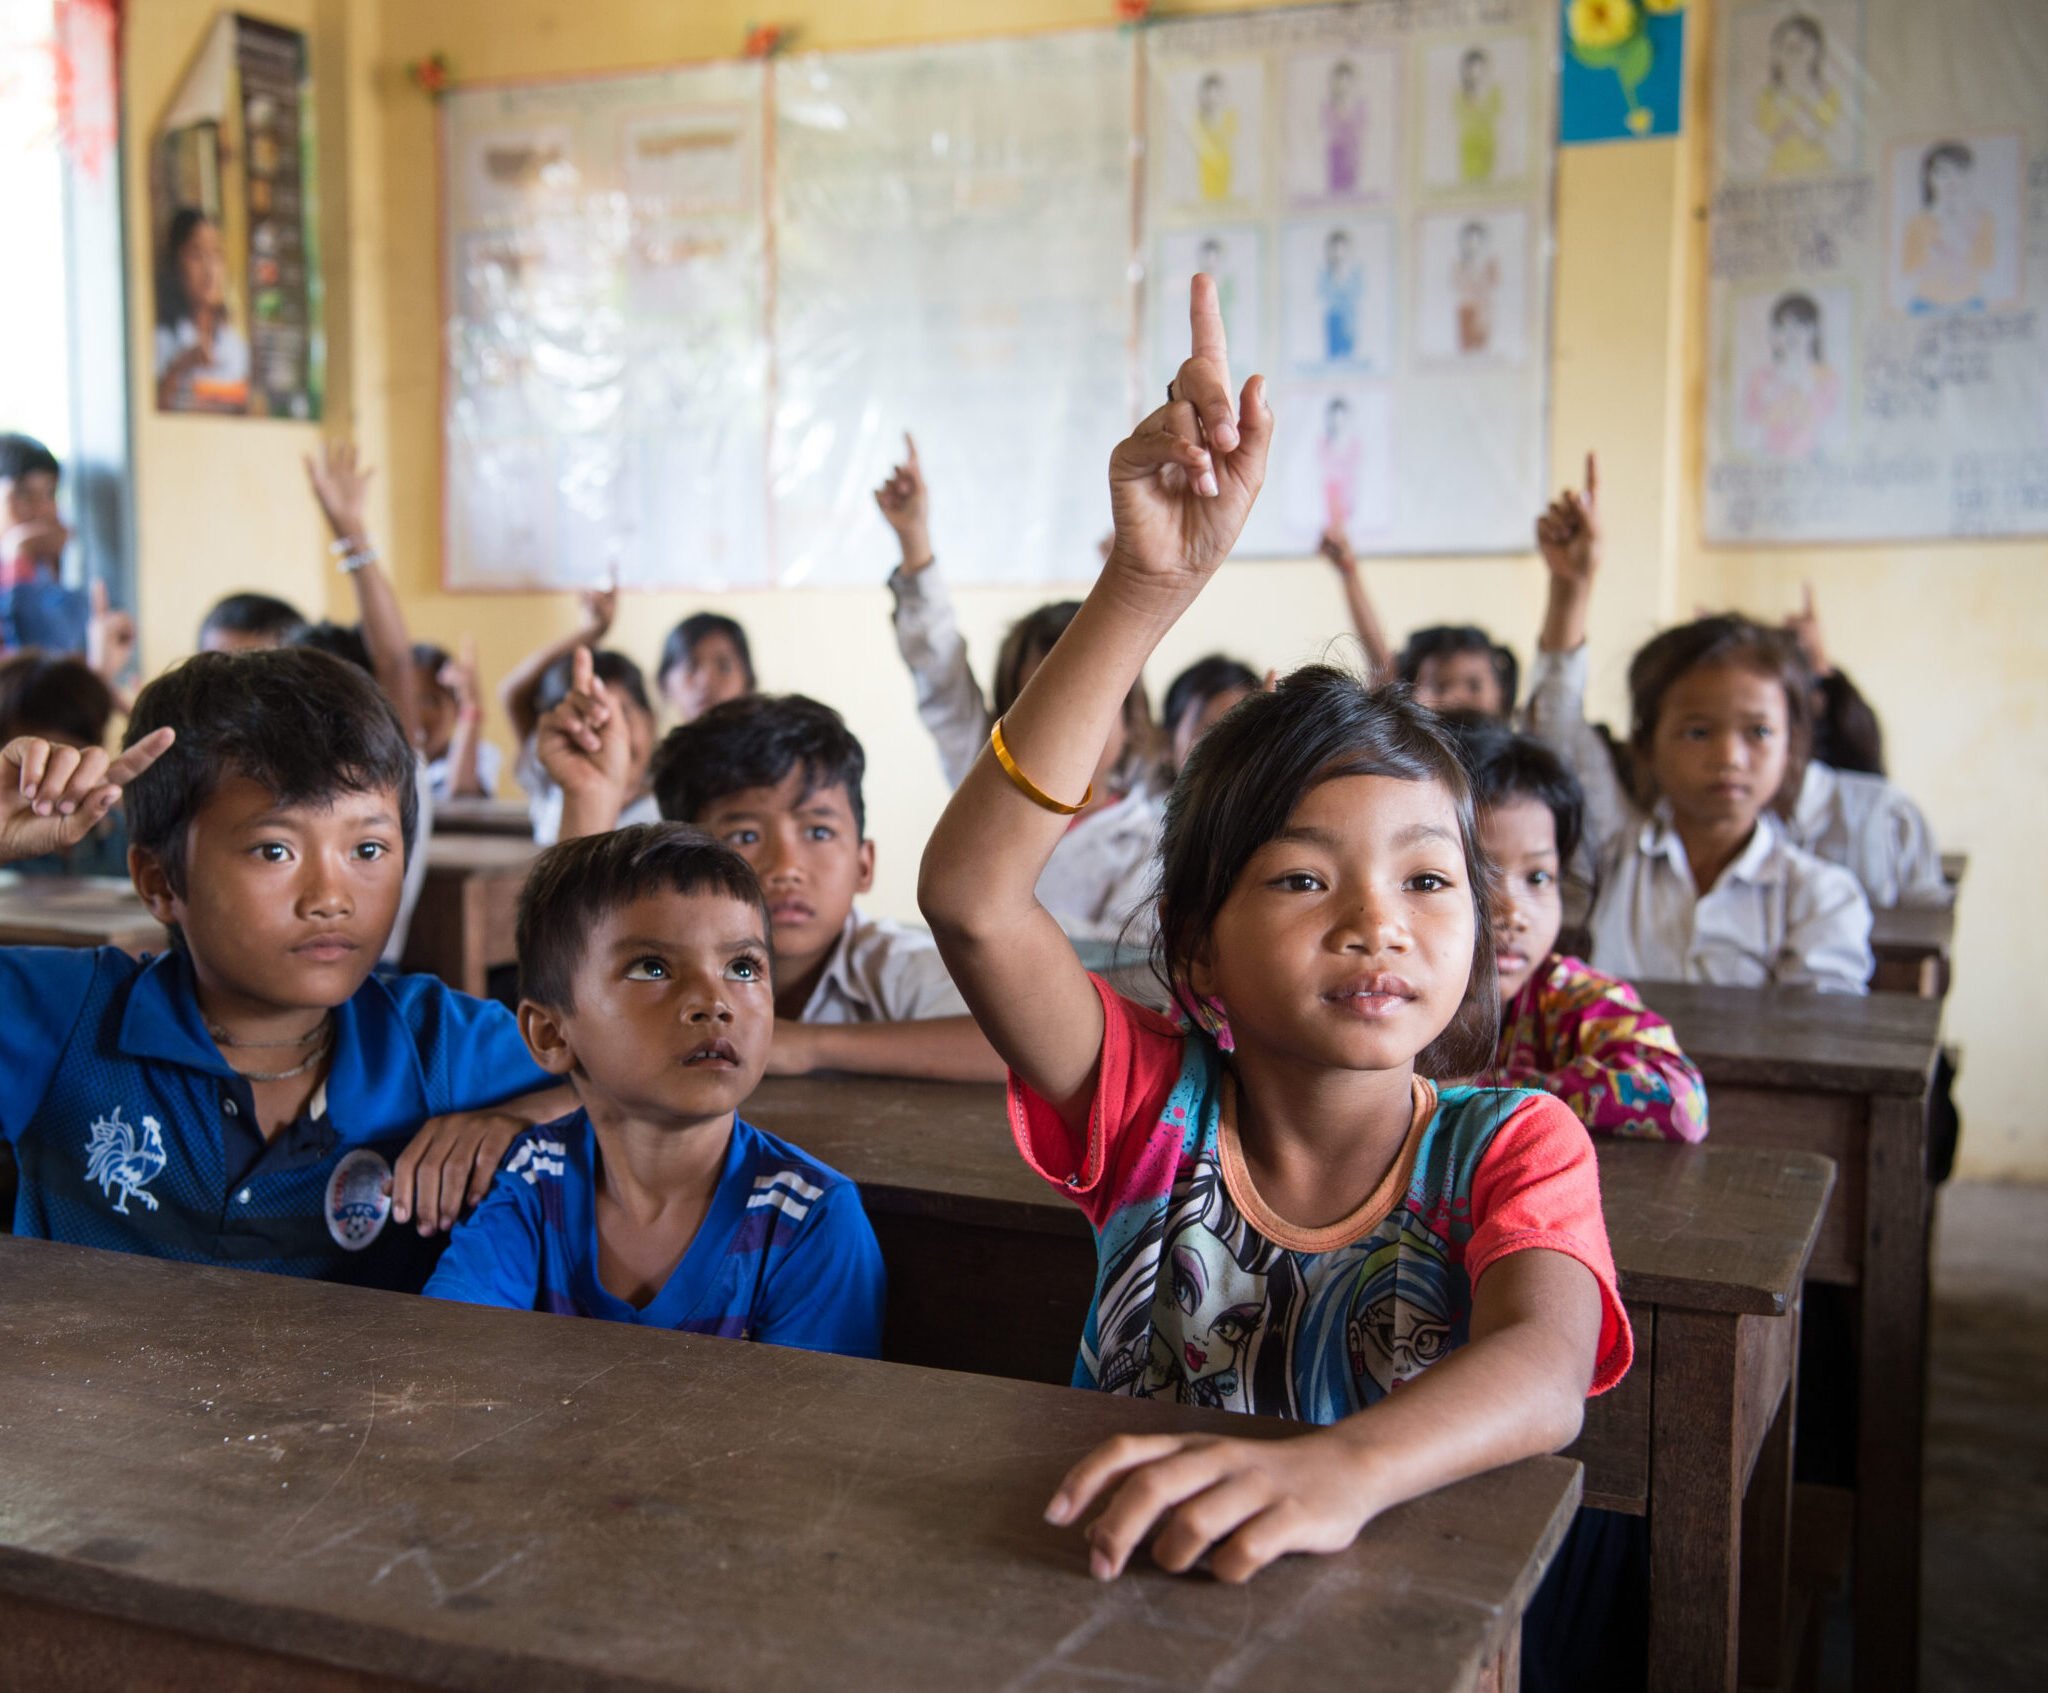 Kambodzalainen koulutyttö viittaa luokkahuoneessa. Ympärillä näkyy muita koululaisia.